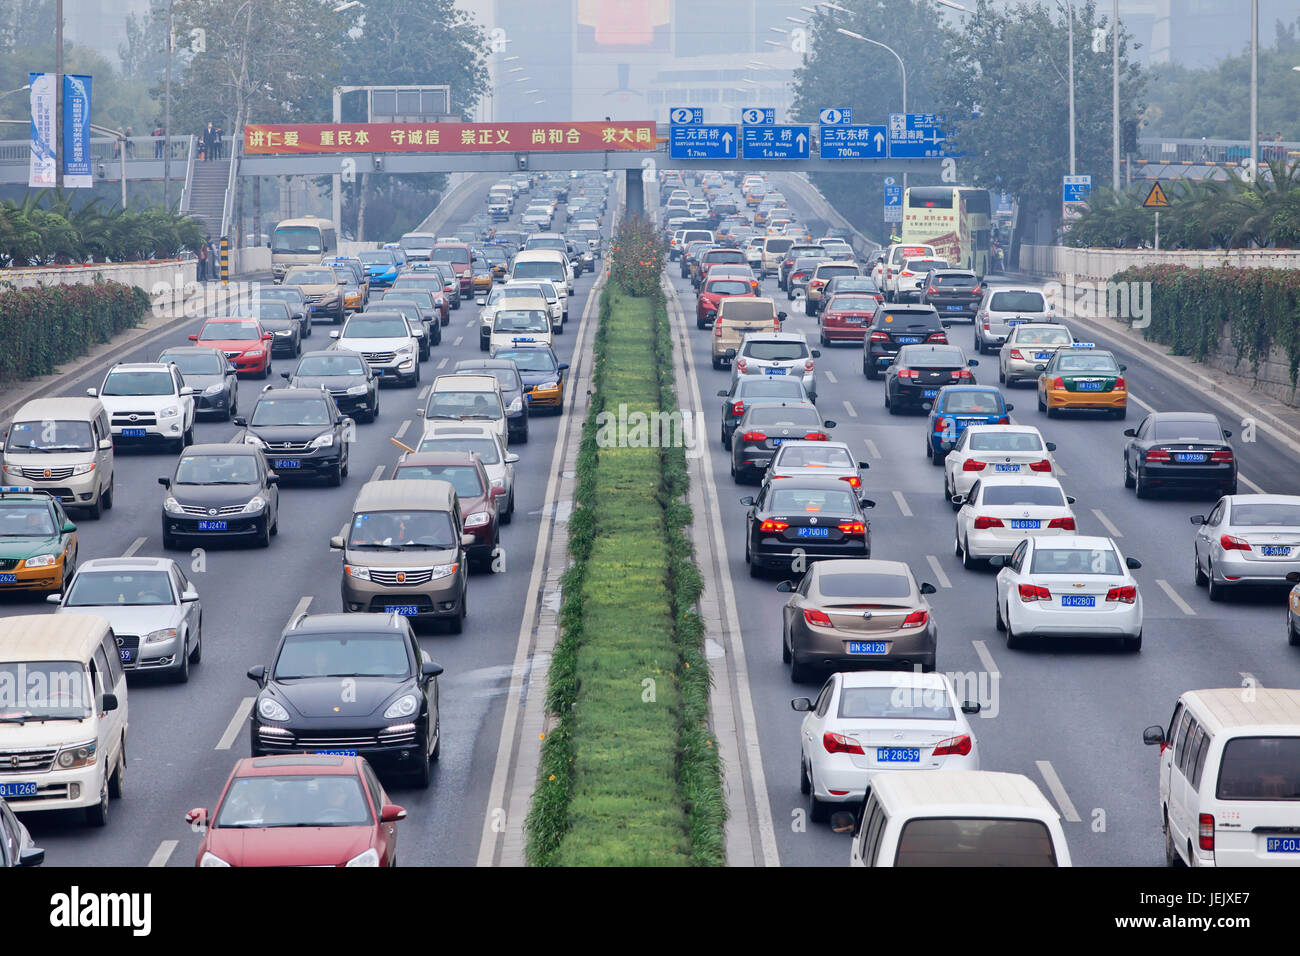 PECHINO-OTT. 19, 2014. Ingorgo di traffico nella città coperta di smog. L'allarme di smog di Pechino è andato ad arancione, significa "pericoloso", causato maily dalle emissioni di scarico. Foto Stock